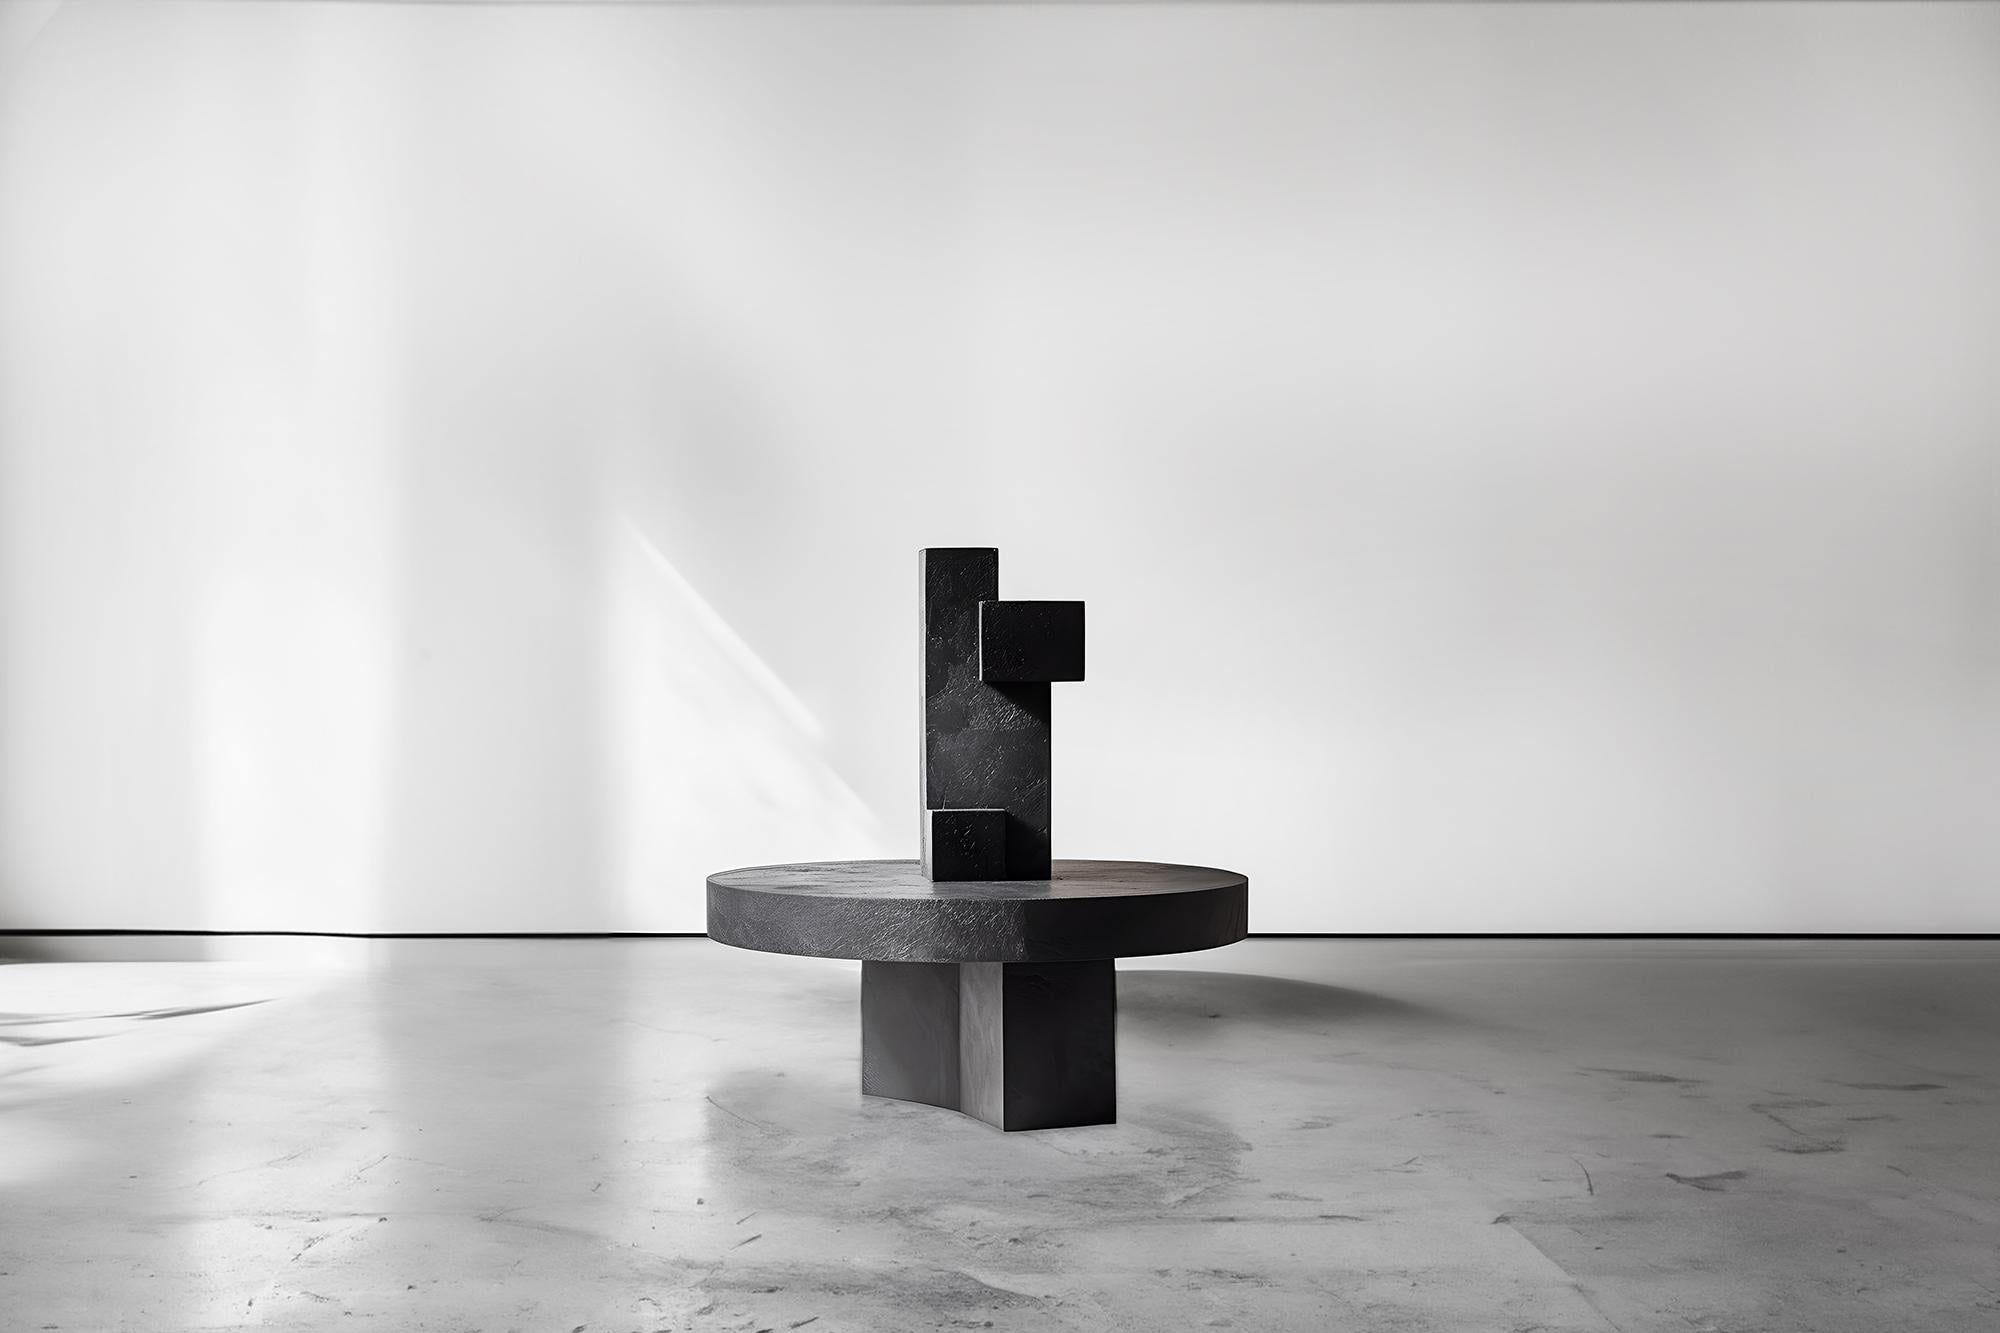 Unseen Force #1 Joel Escalona: Tisch aus massiver Eiche, Art-inspiriertes Design
--
Skulpturaler Couchtisch aus Massivholz mit natürlichem Finish auf Wasserbasis oder karbonisiert. Aufgrund der Natur des Produktionsprozesses kann jedes Stück in